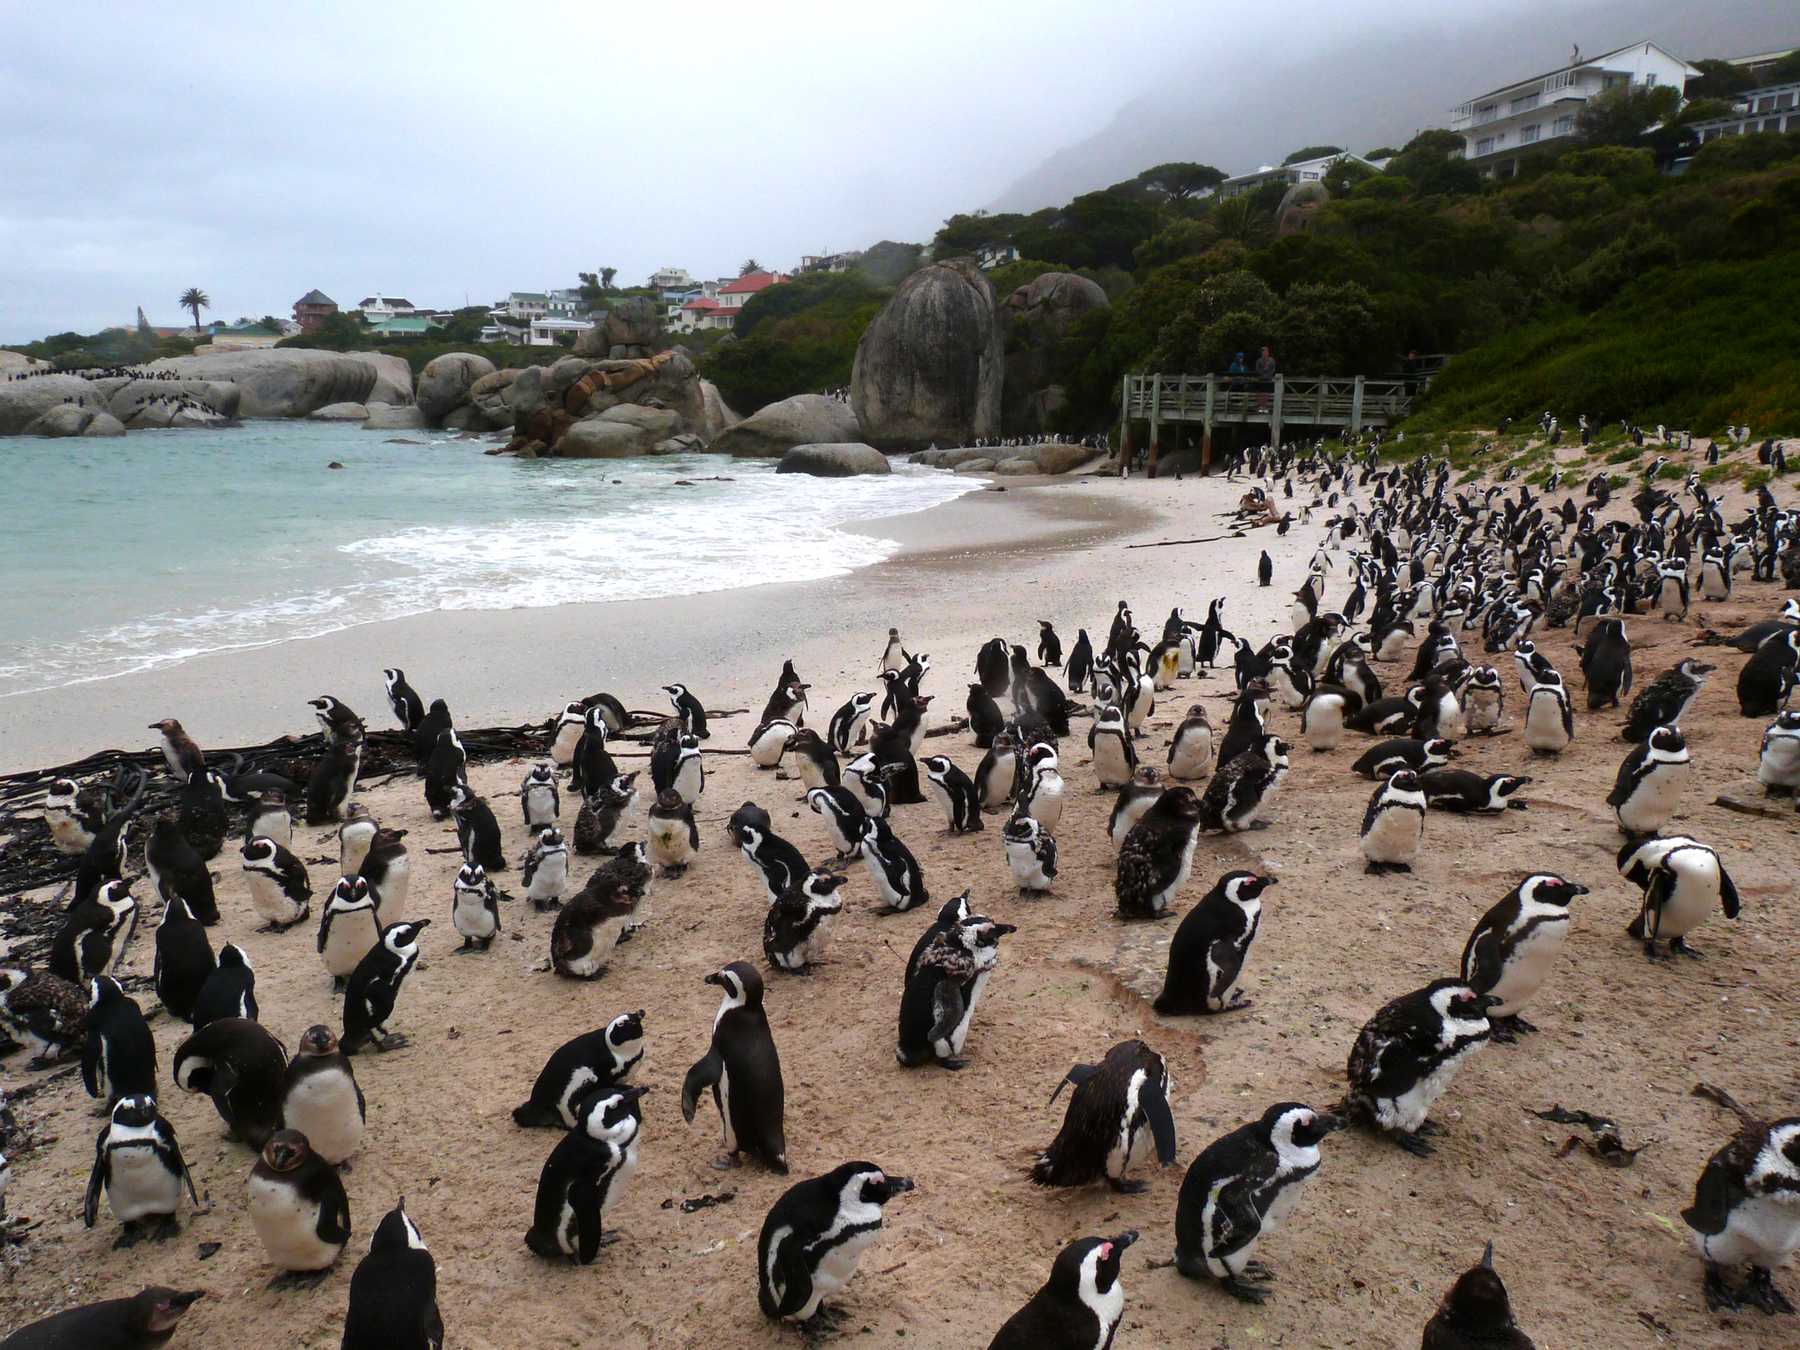 Roteiro-Cidade-do-Cabo-4-a-7-dias-boulders-beach-praia-dos-pinguins Roteiro Cidade do Cabo 4 a 7 dias (Sensacional)! 